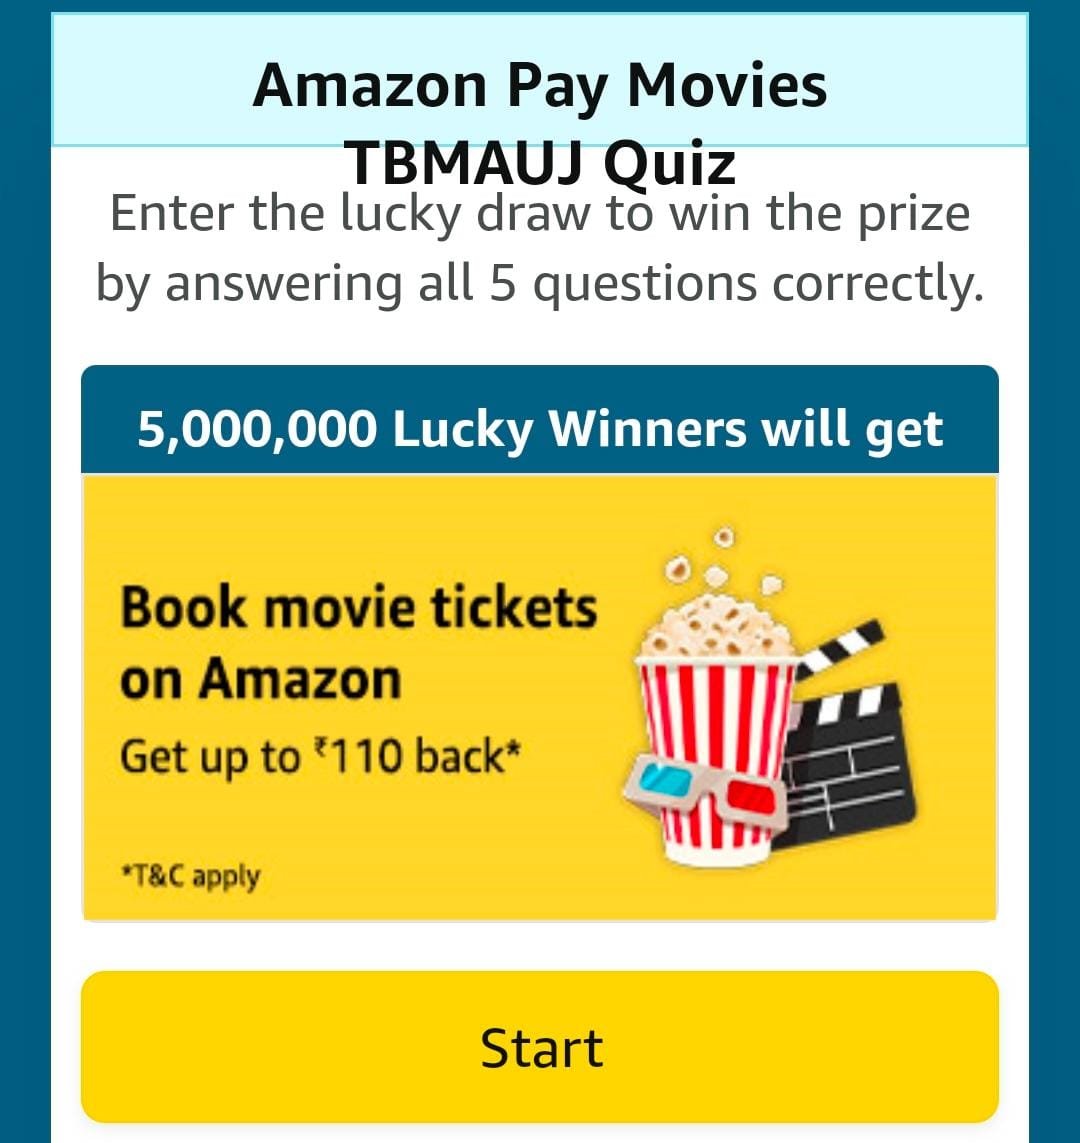 Amazon Pay Movies TBMAUJ Quiz